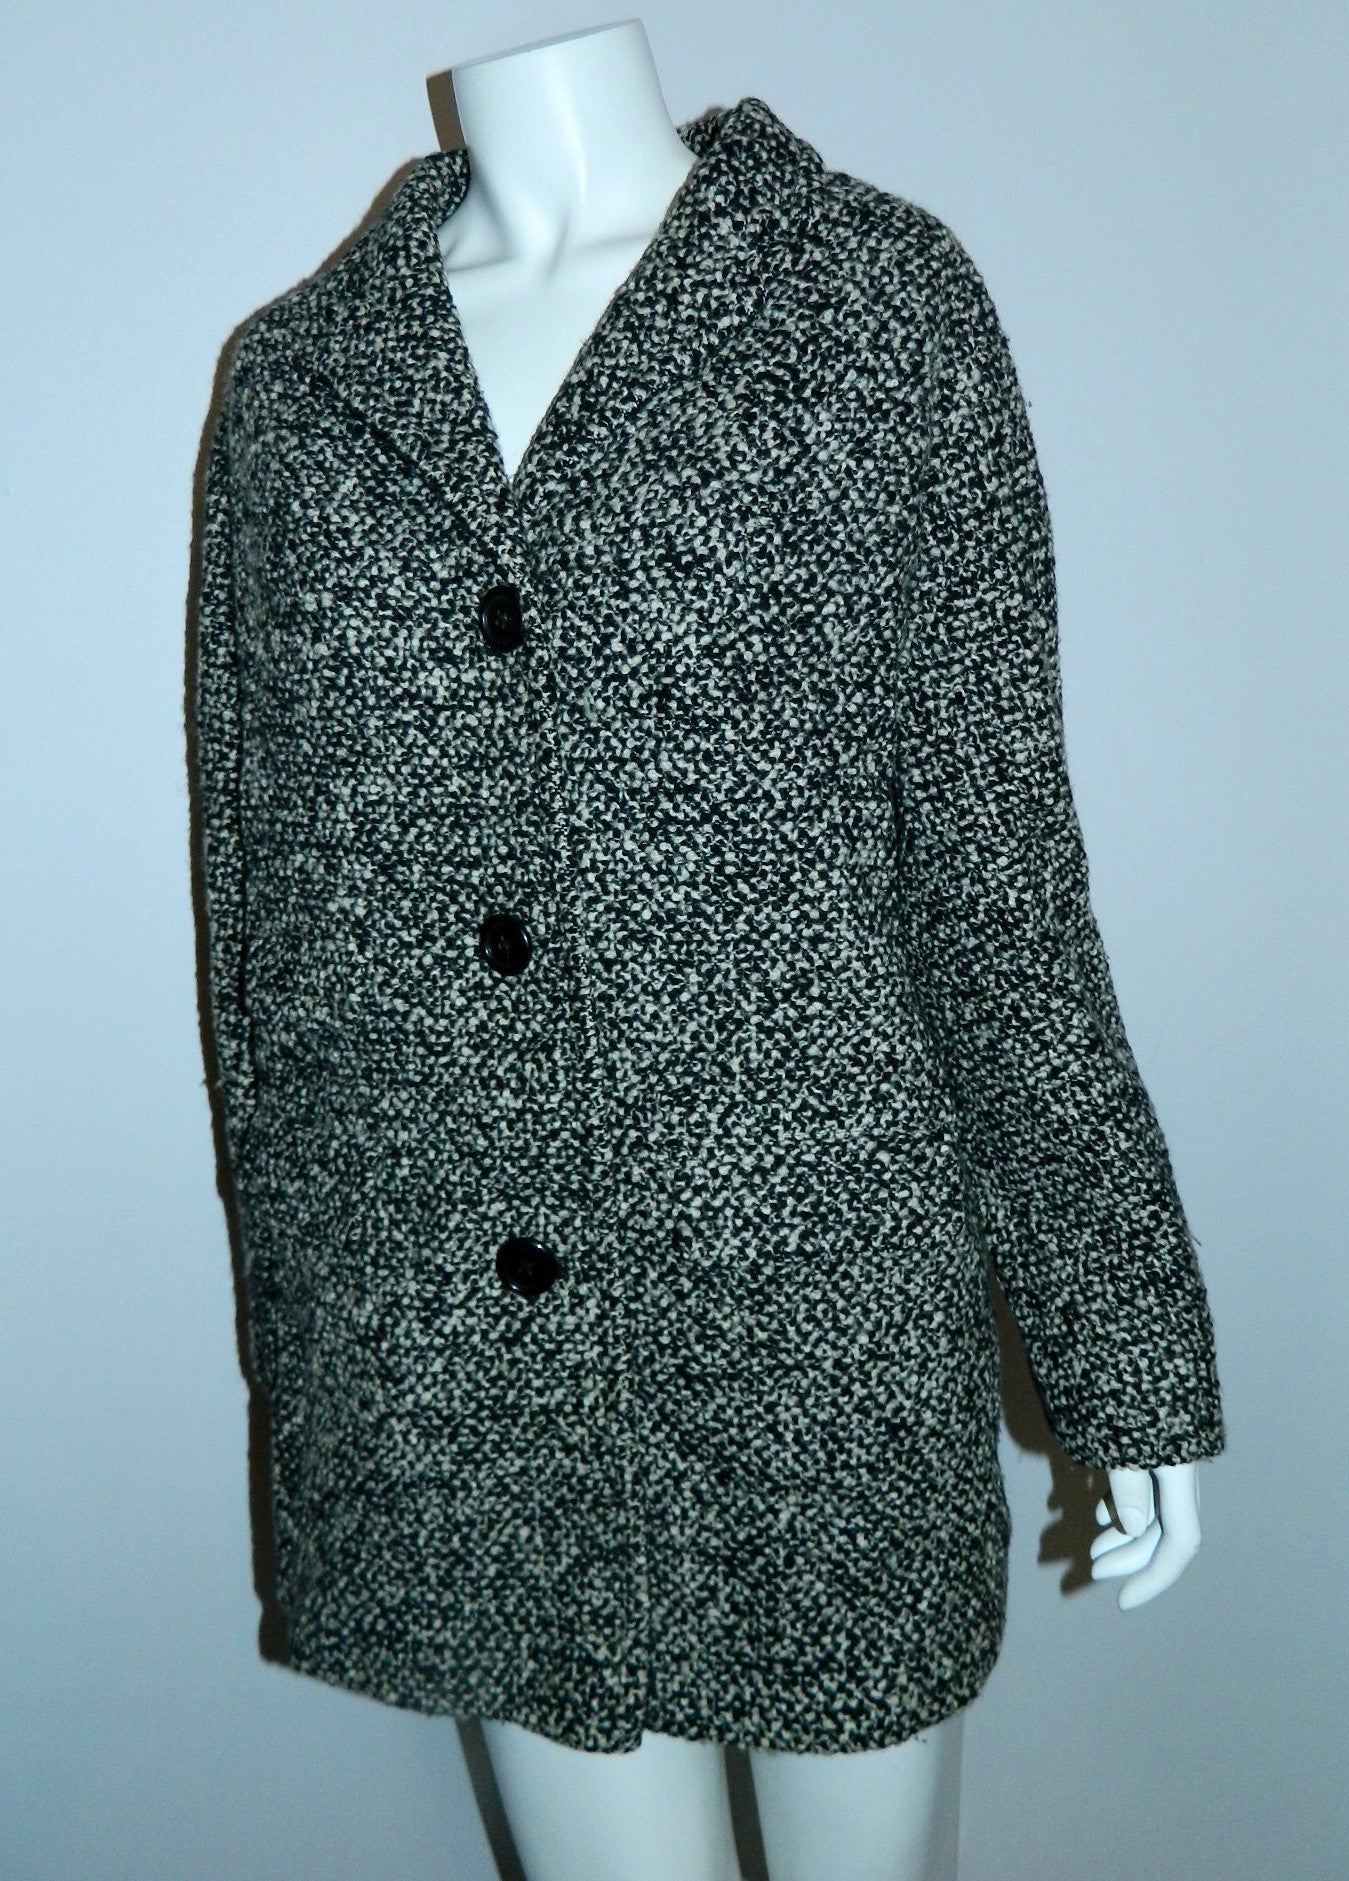 vintage tweed cocoon coat 1950s / 1960s Best & Co. black white